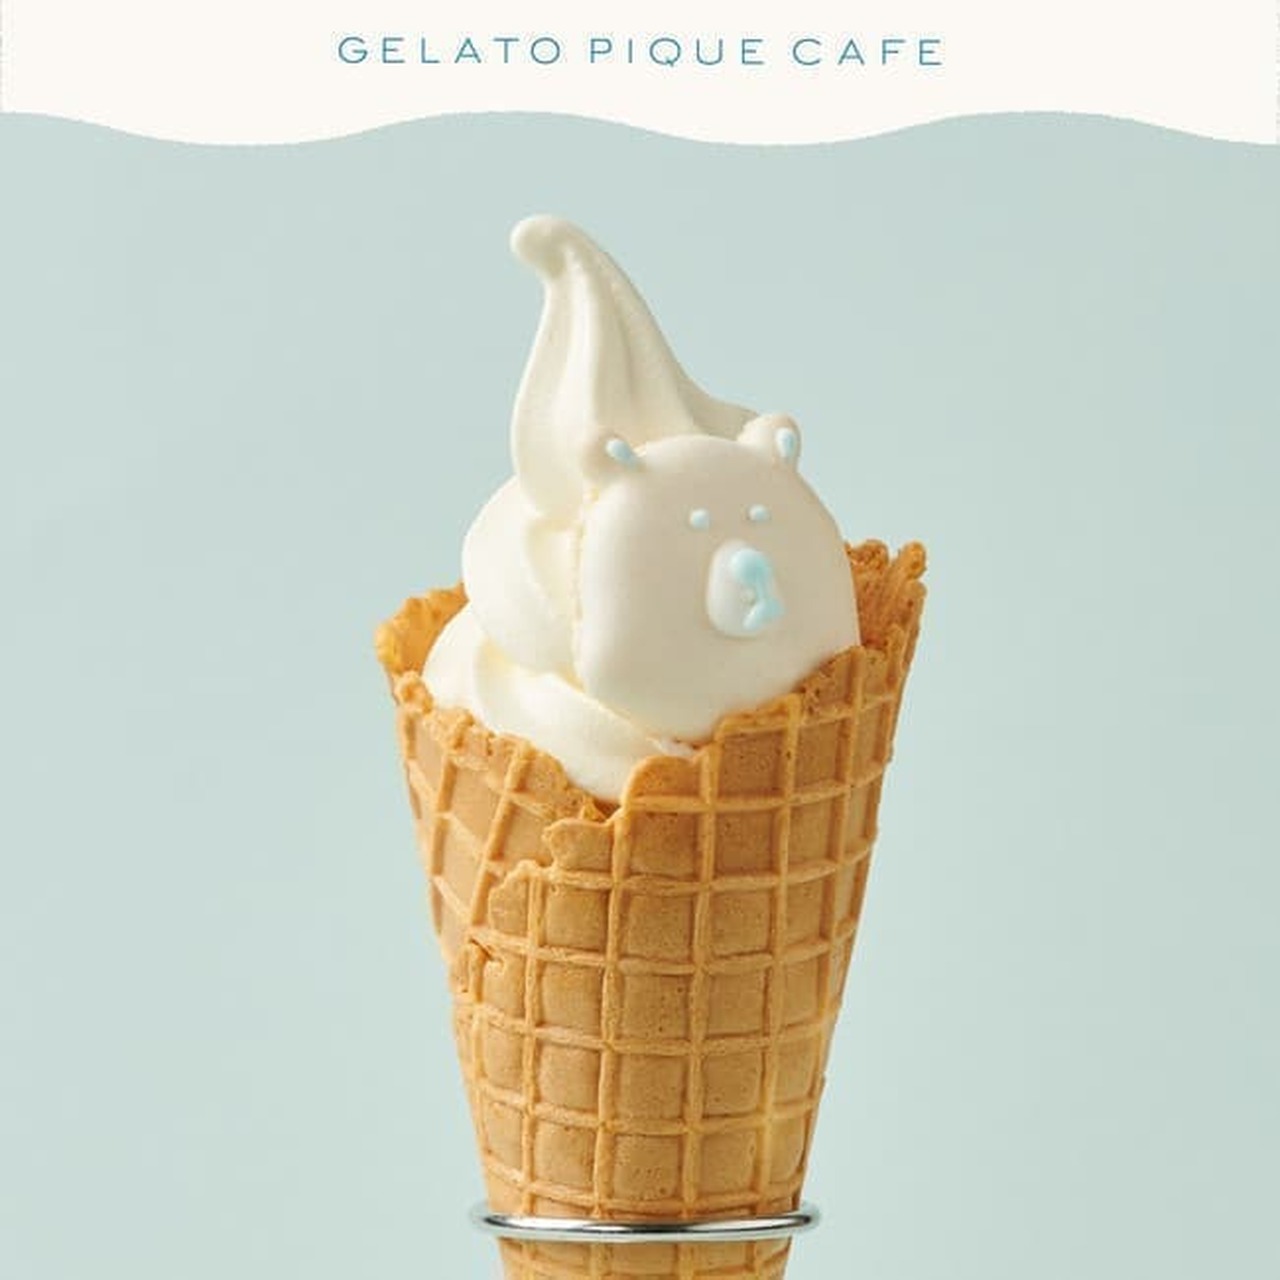 Gelato Pique Cafe "Polar Bear Soft Ice Cream"